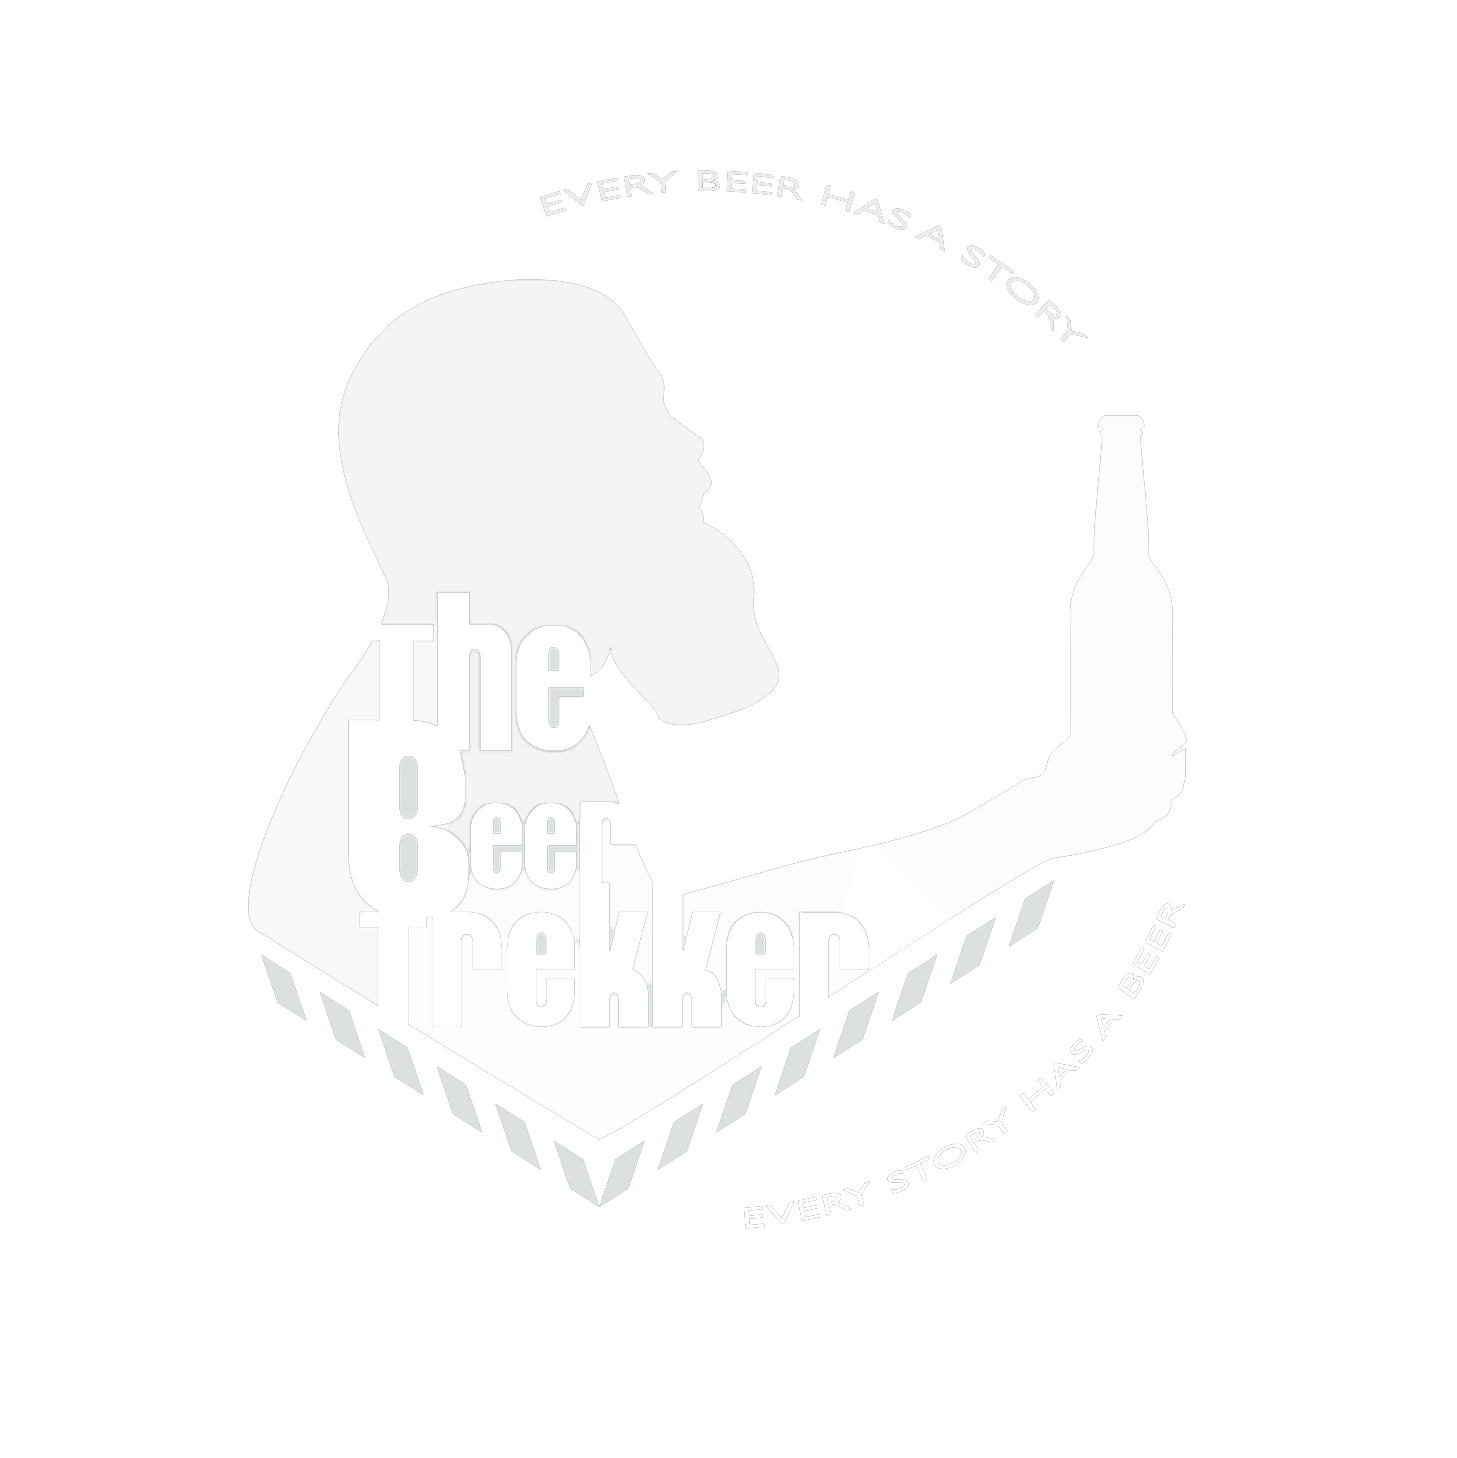 The BeerTrekker